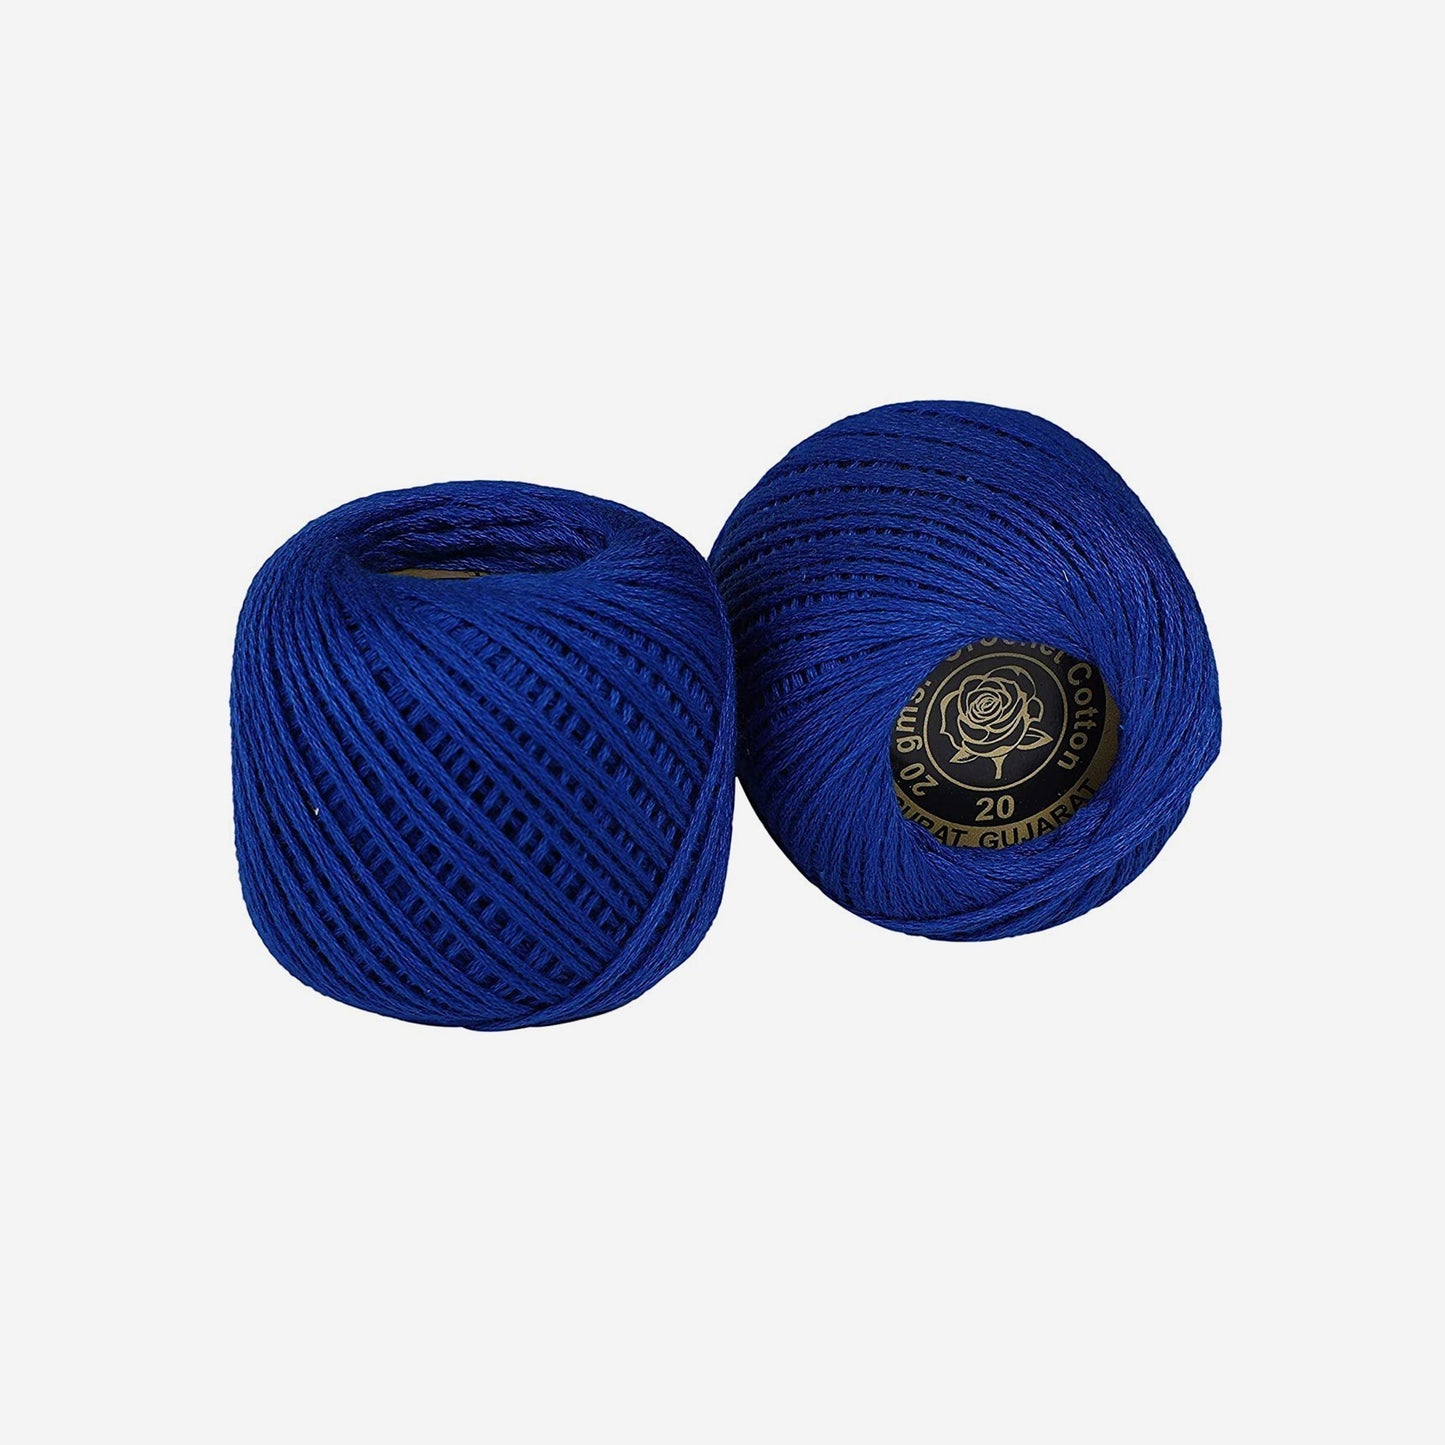 Hand-crochet hoops (Variation 16)